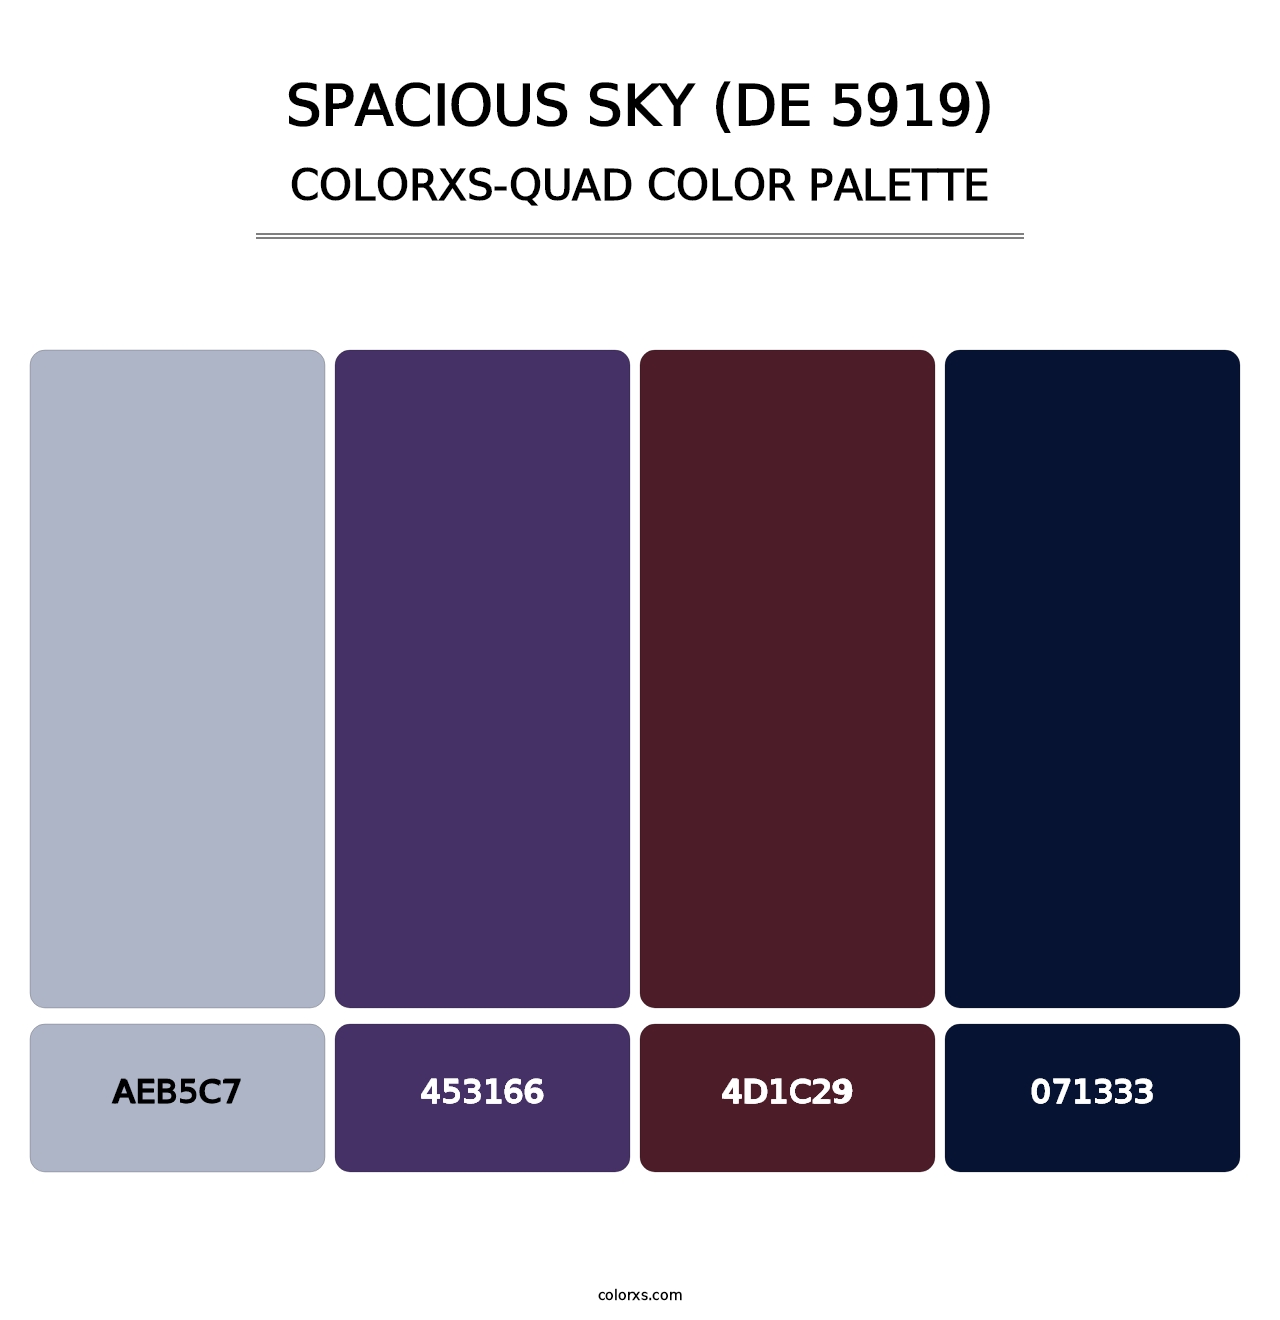 Spacious Sky (DE 5919) - Colorxs Quad Palette